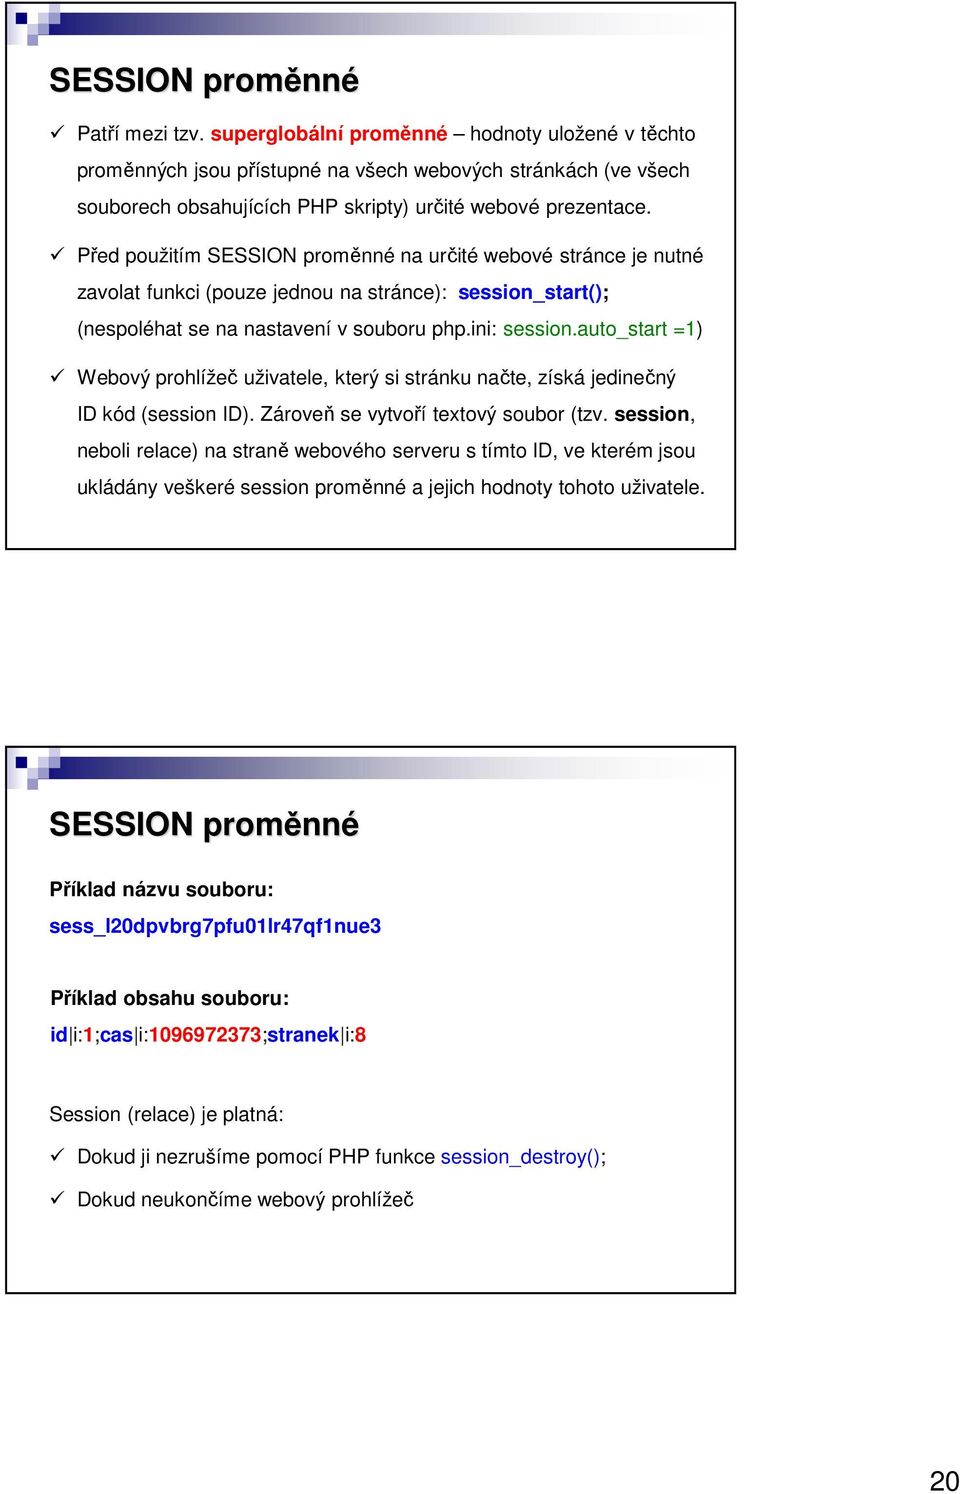 Před použitím SESSION proměnné na určité webové stránce je nutné zavolat funkci (pouze jednou na stránce): session_start(); (nespoléhat se na nastavení v souboru php.ini: session.